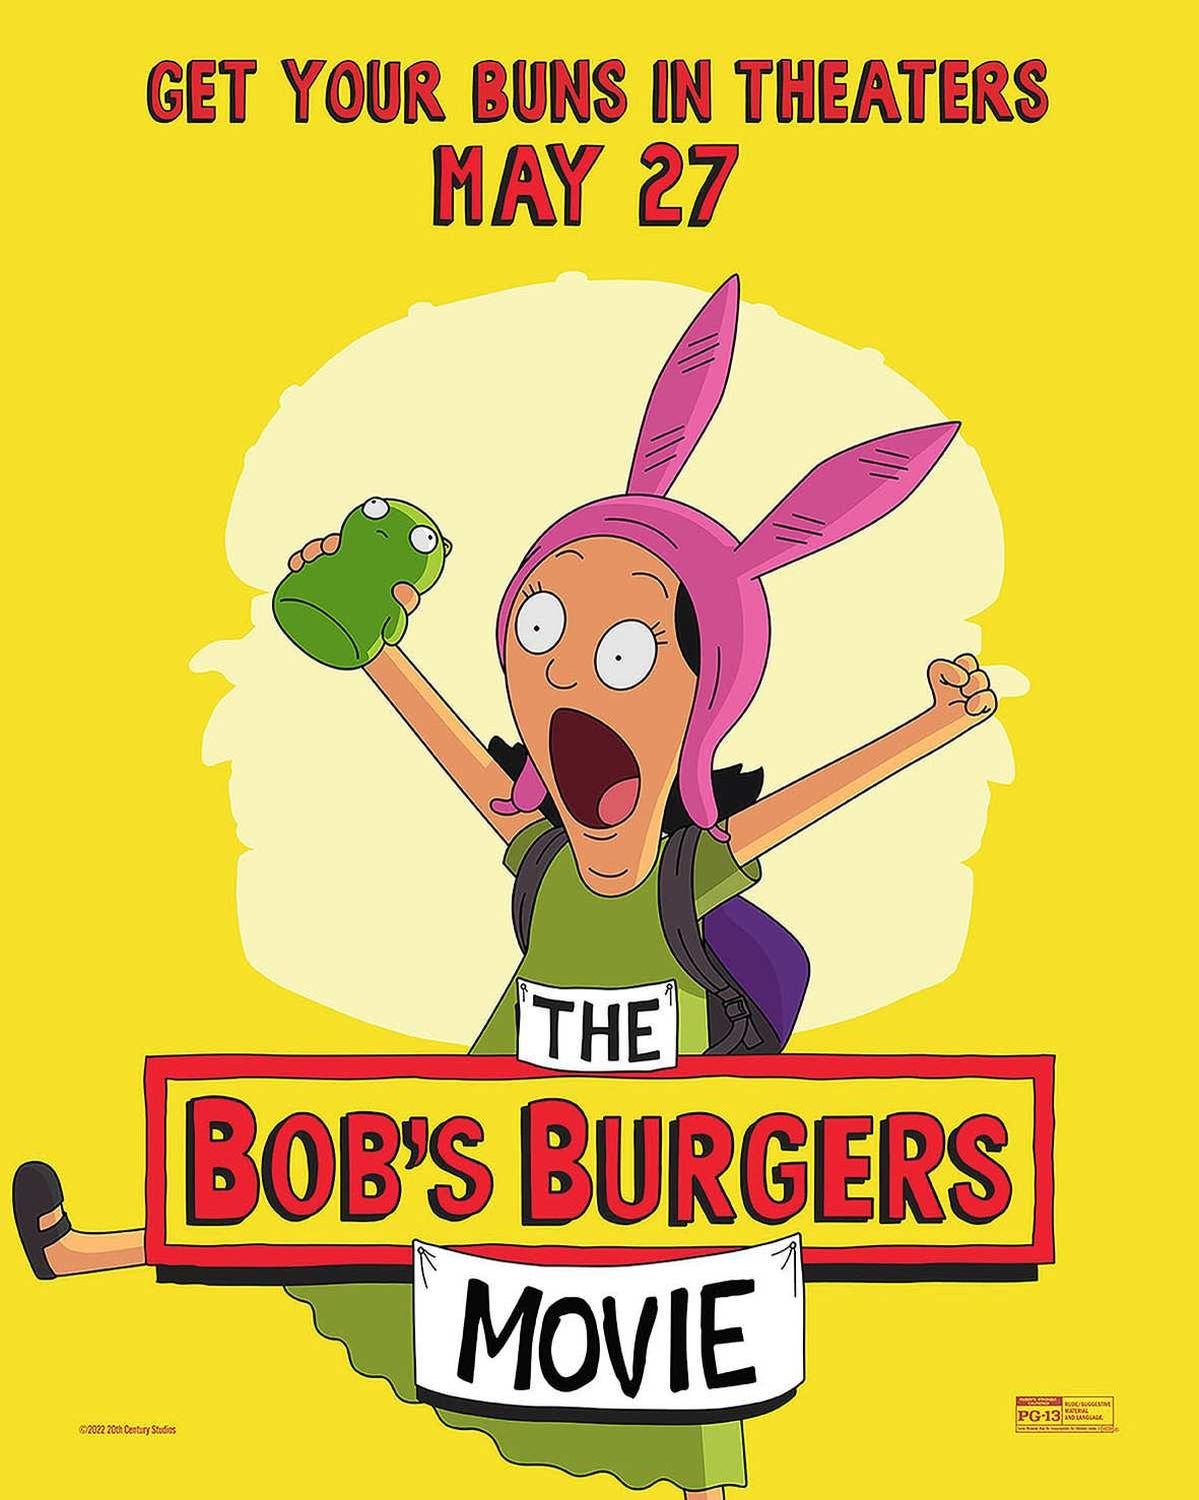 bobs-burgers-movie-posters-003.jpg